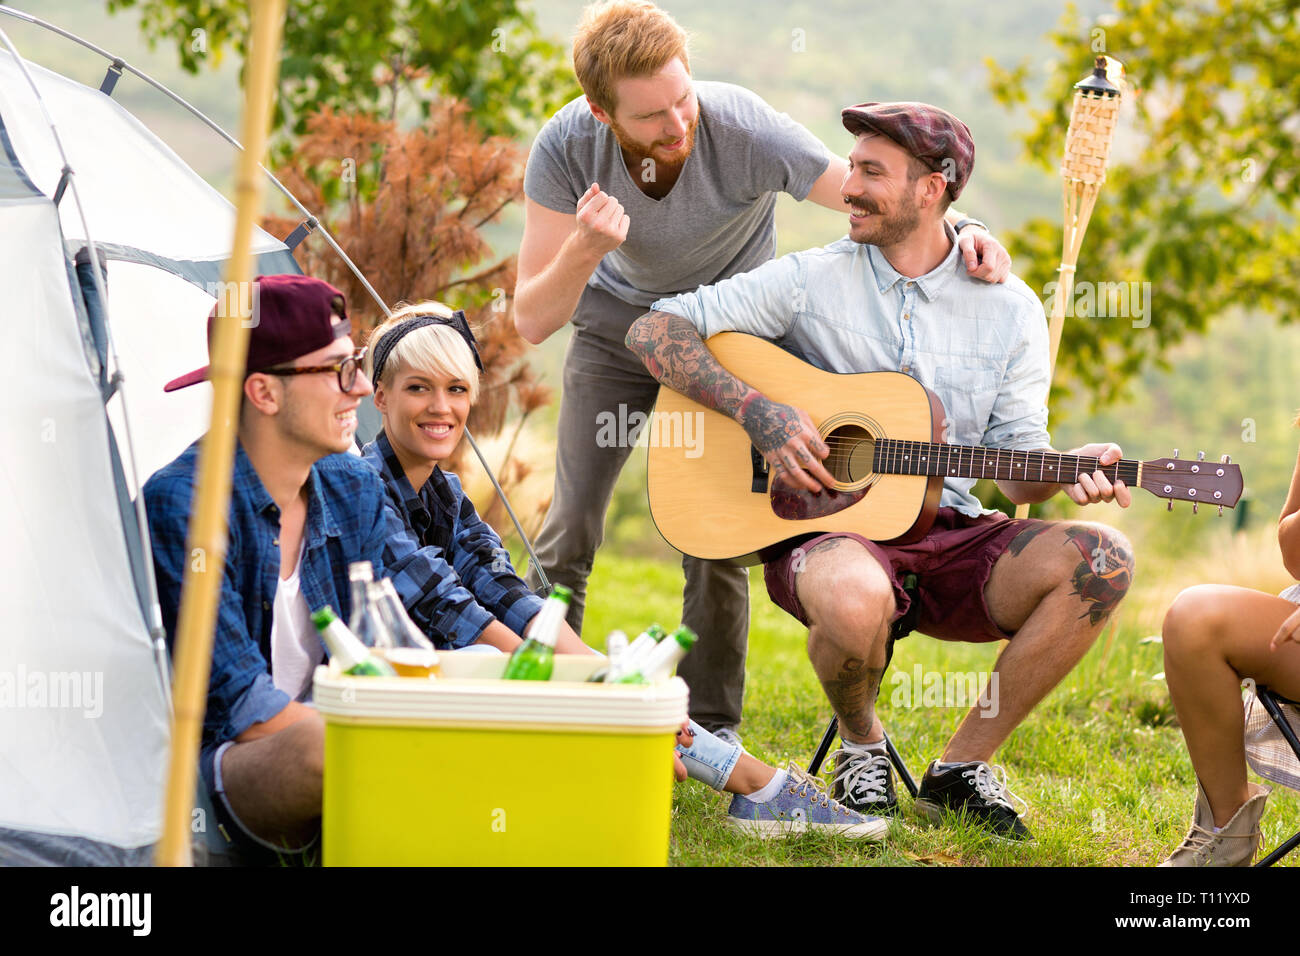 Tätowiert Kerl Gitarre spielen, Singen und Lachen mit Freunden vor dem Zelt in der Natur Stockfoto